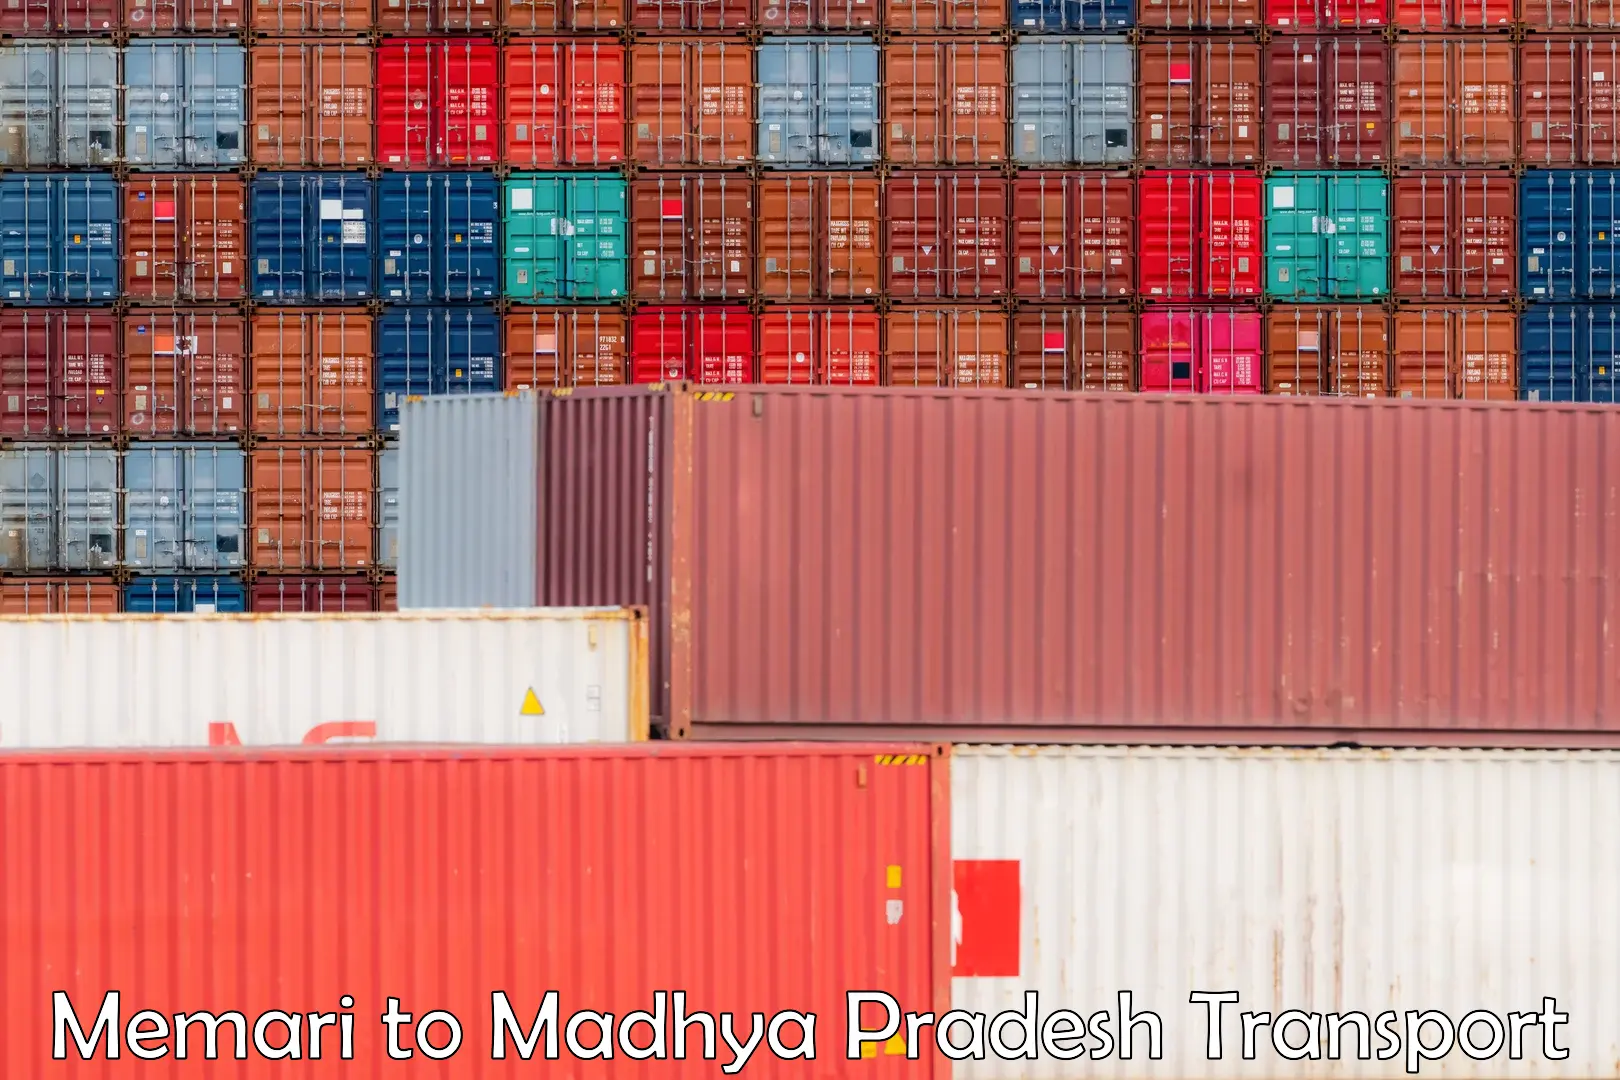 Container transport service Memari to Madhya Pradesh